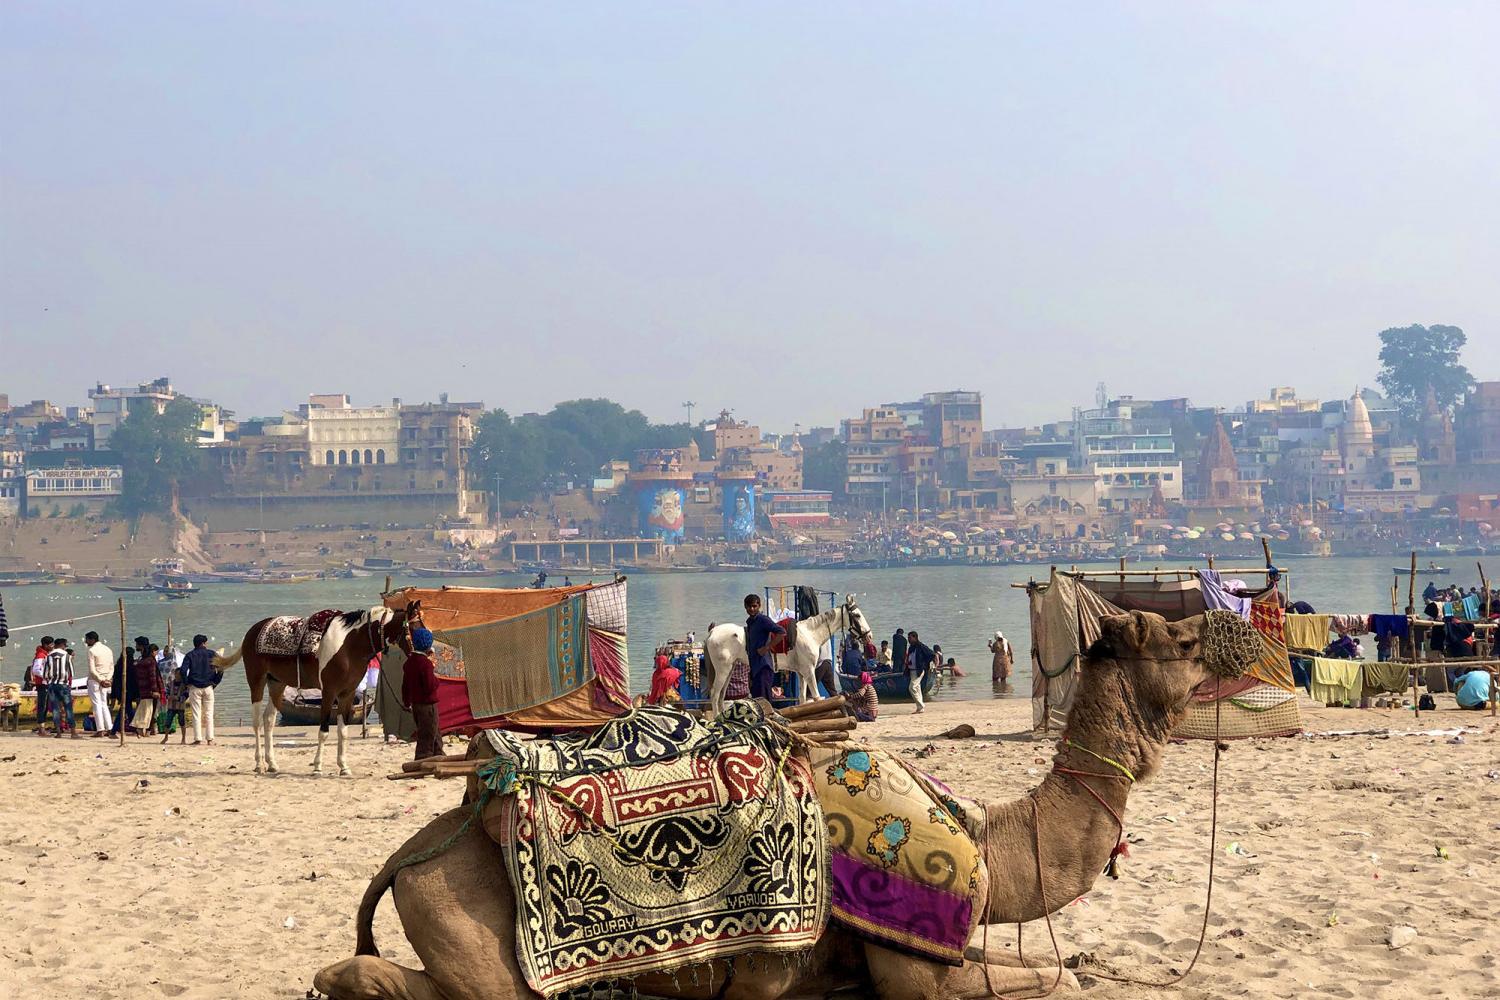 A photo of a camel taken on a J-Term study tour.